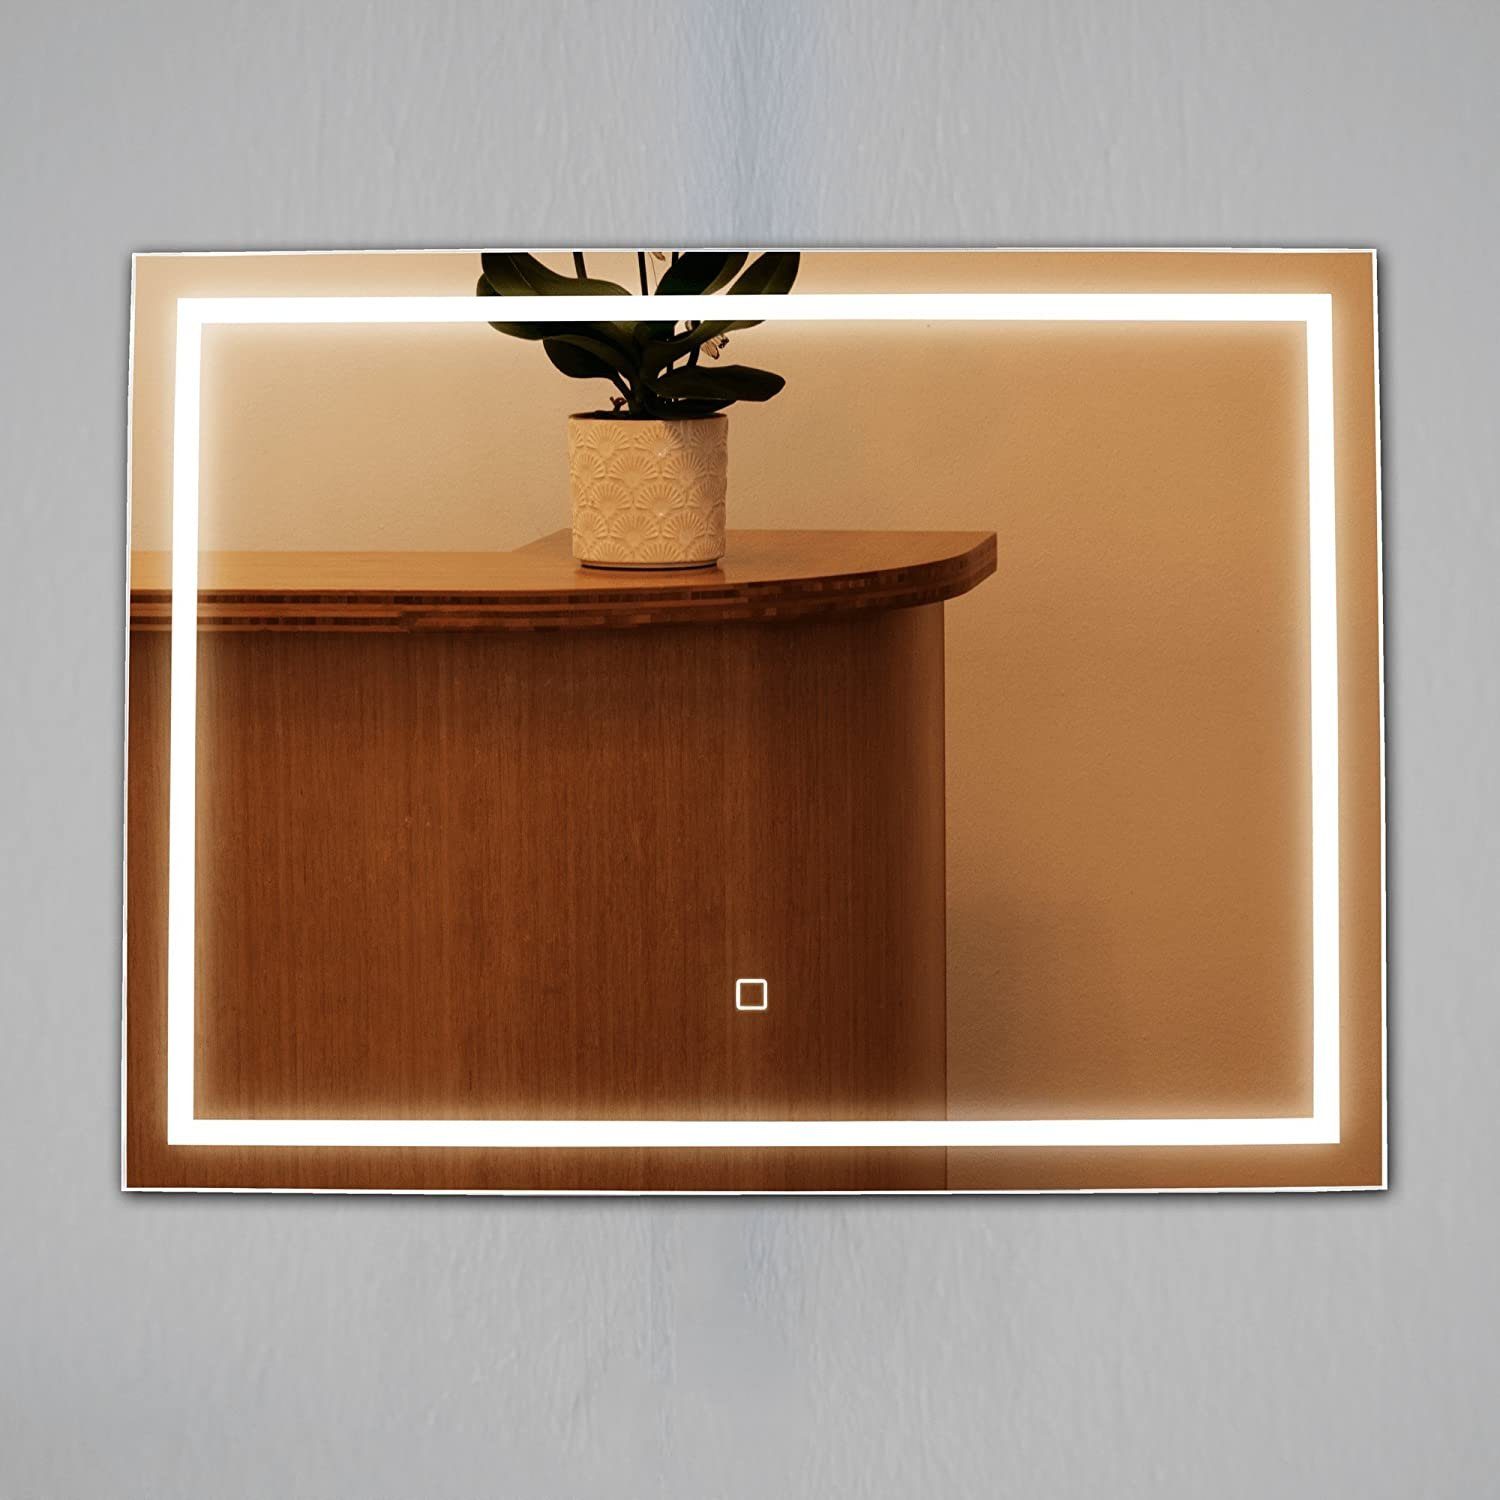 Yu Yang Badspiegel Palla, LED Spiegel mit Beleuchtung, Touch Funktion, Alu Rahmen, IP44, Kaltweiß, 6000K